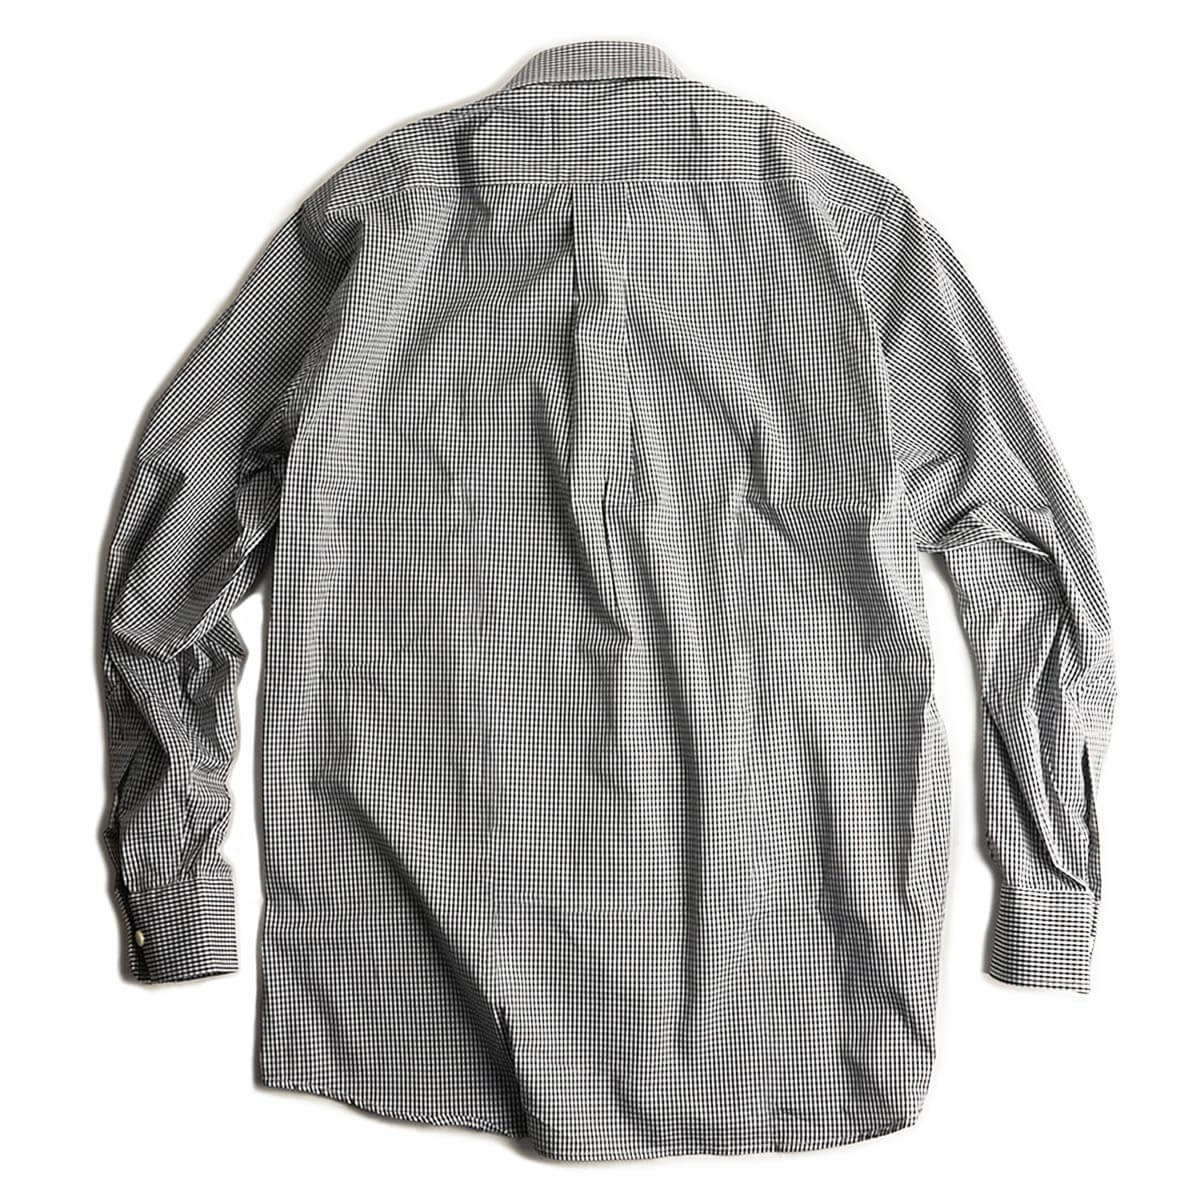 ギットマン ブラザーズ Gitman Bros. ギンガムチェック ボタンダウンシャツ ブラック/ホワイト アメリカ製 米国製 GINGHAM  CHECK B.D. SHIRT 長袖